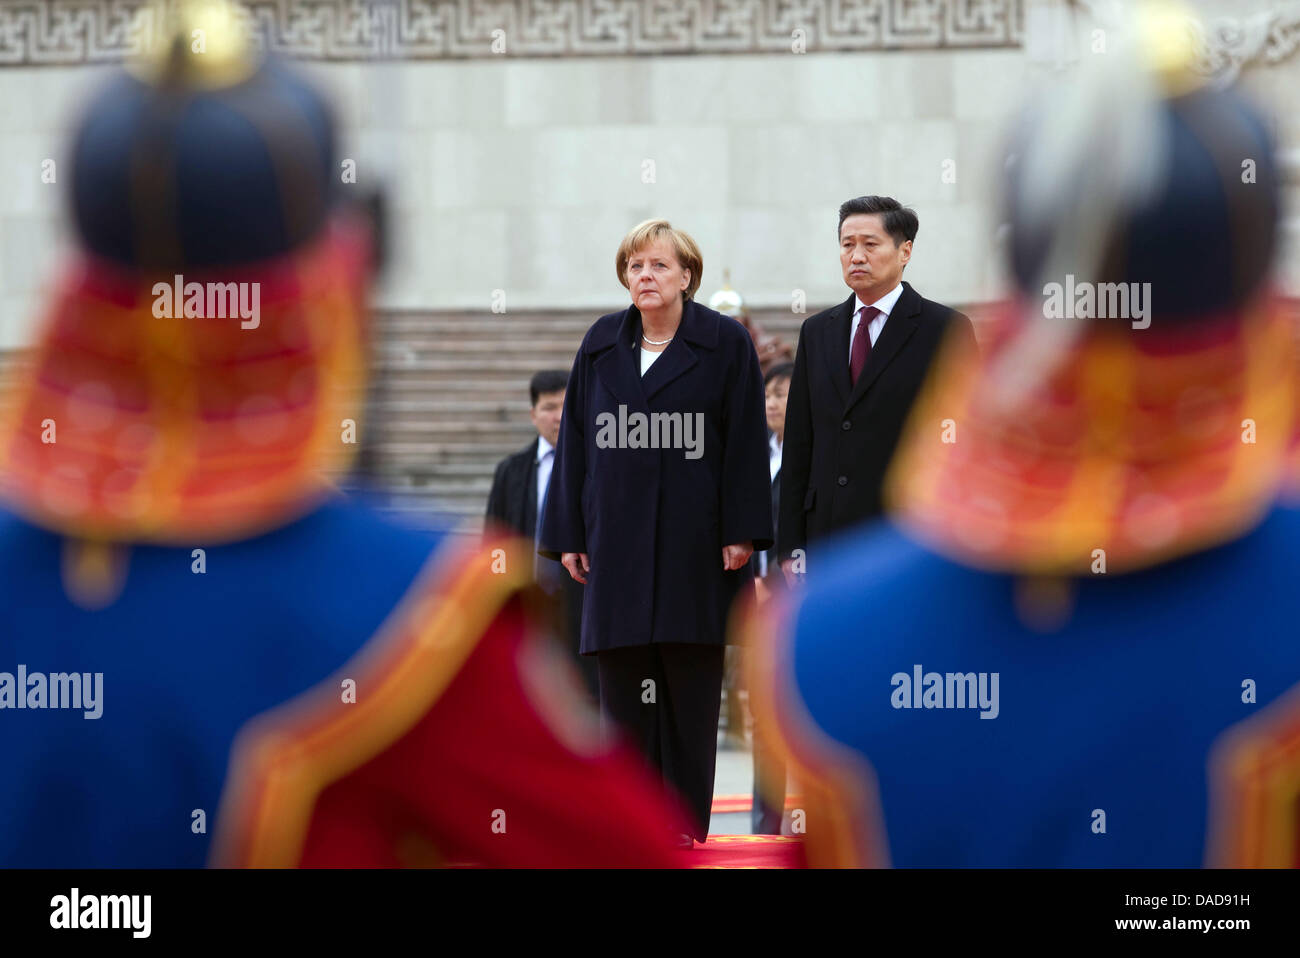 Bundeskanzlerin Angela Merkel (CDU) wird am Donnerstag (13.10.2011) in Ulan Bator in der Mongolei von Ministerpräsident Sukhbaatar Batbold mit militärischen Ehren begrüßt. Auf dem Programm des Besuchs steht unter anderem auch der Abschluss von Wirtschaftsverträgen mit der Mongolei. Michael Kappeler dpa Stock Photo